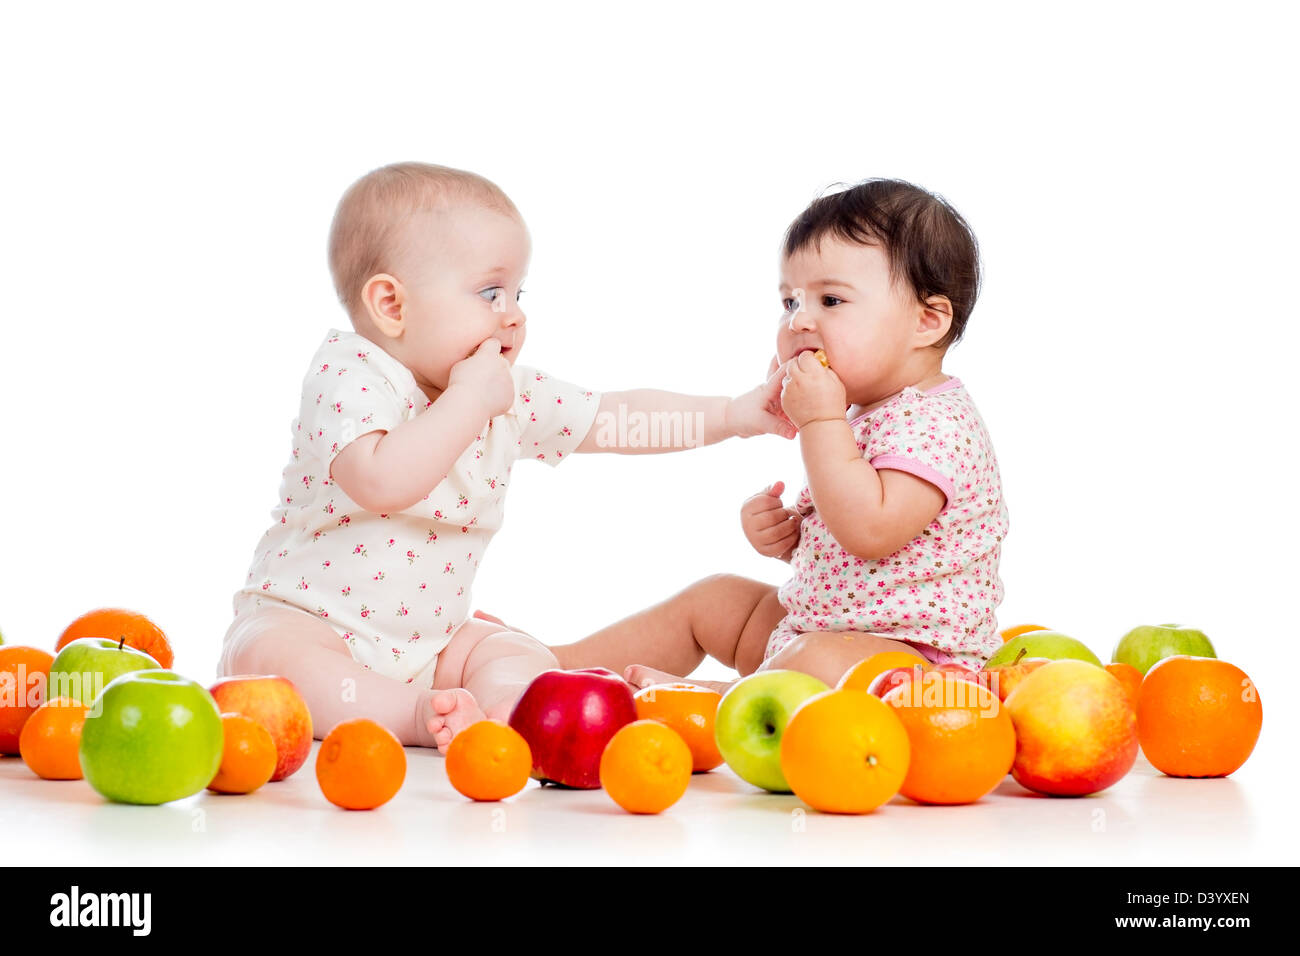 Bébés Enfants drôles avec des aliments sains fruits isolé sur fond blanc Banque D'Images